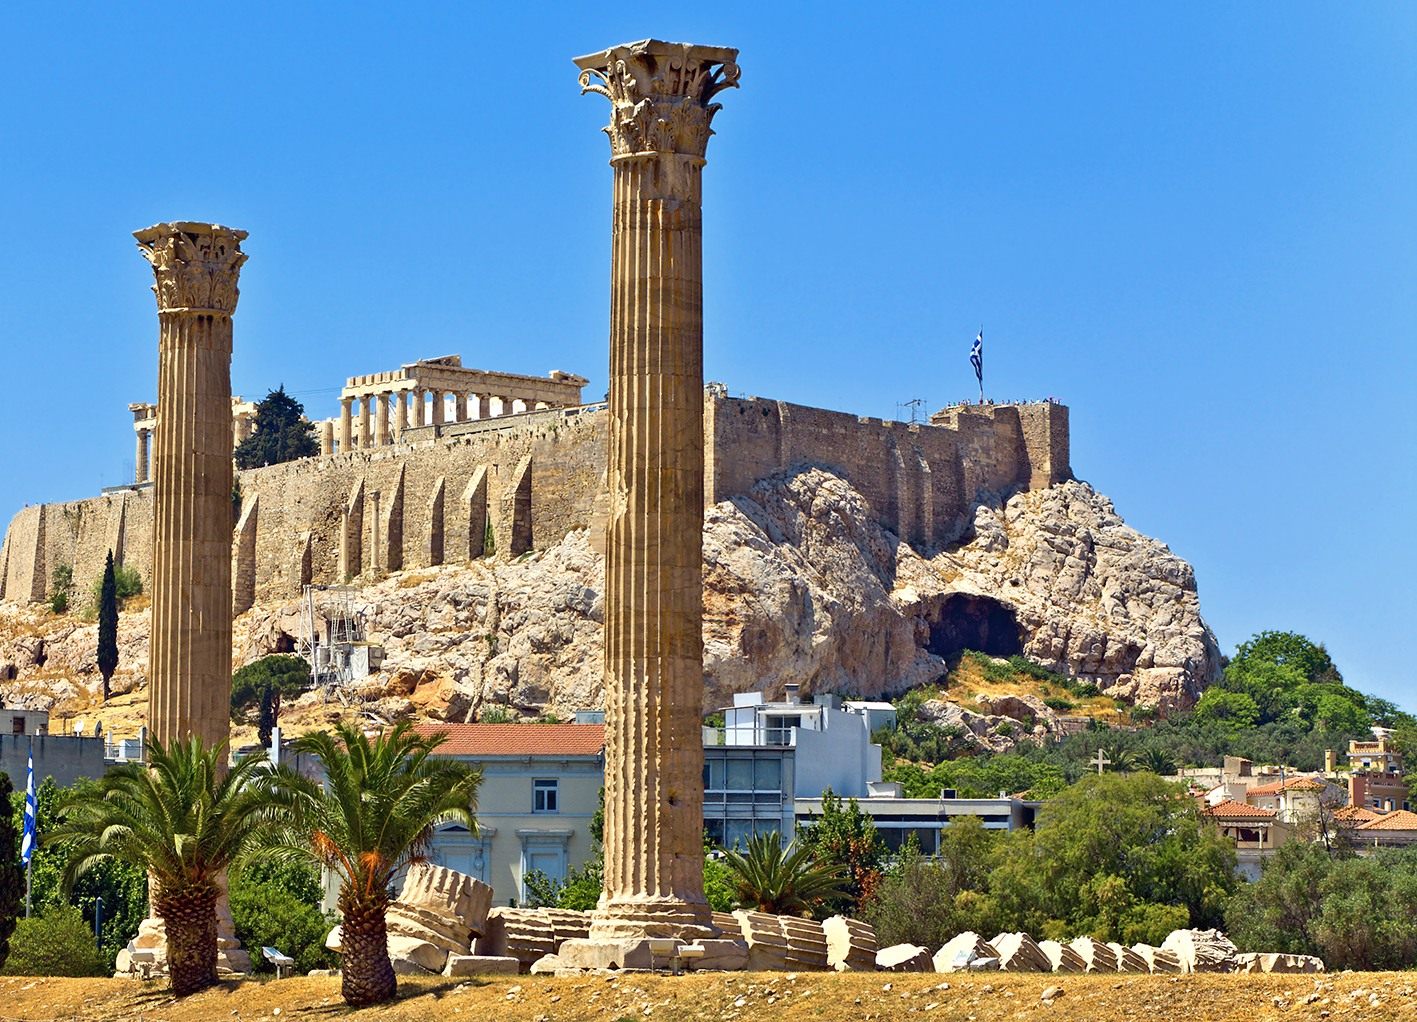 pogled na Akropolu, putovanje zrakoplovom, Mondo travel, arantirano putovanje, krstarenje